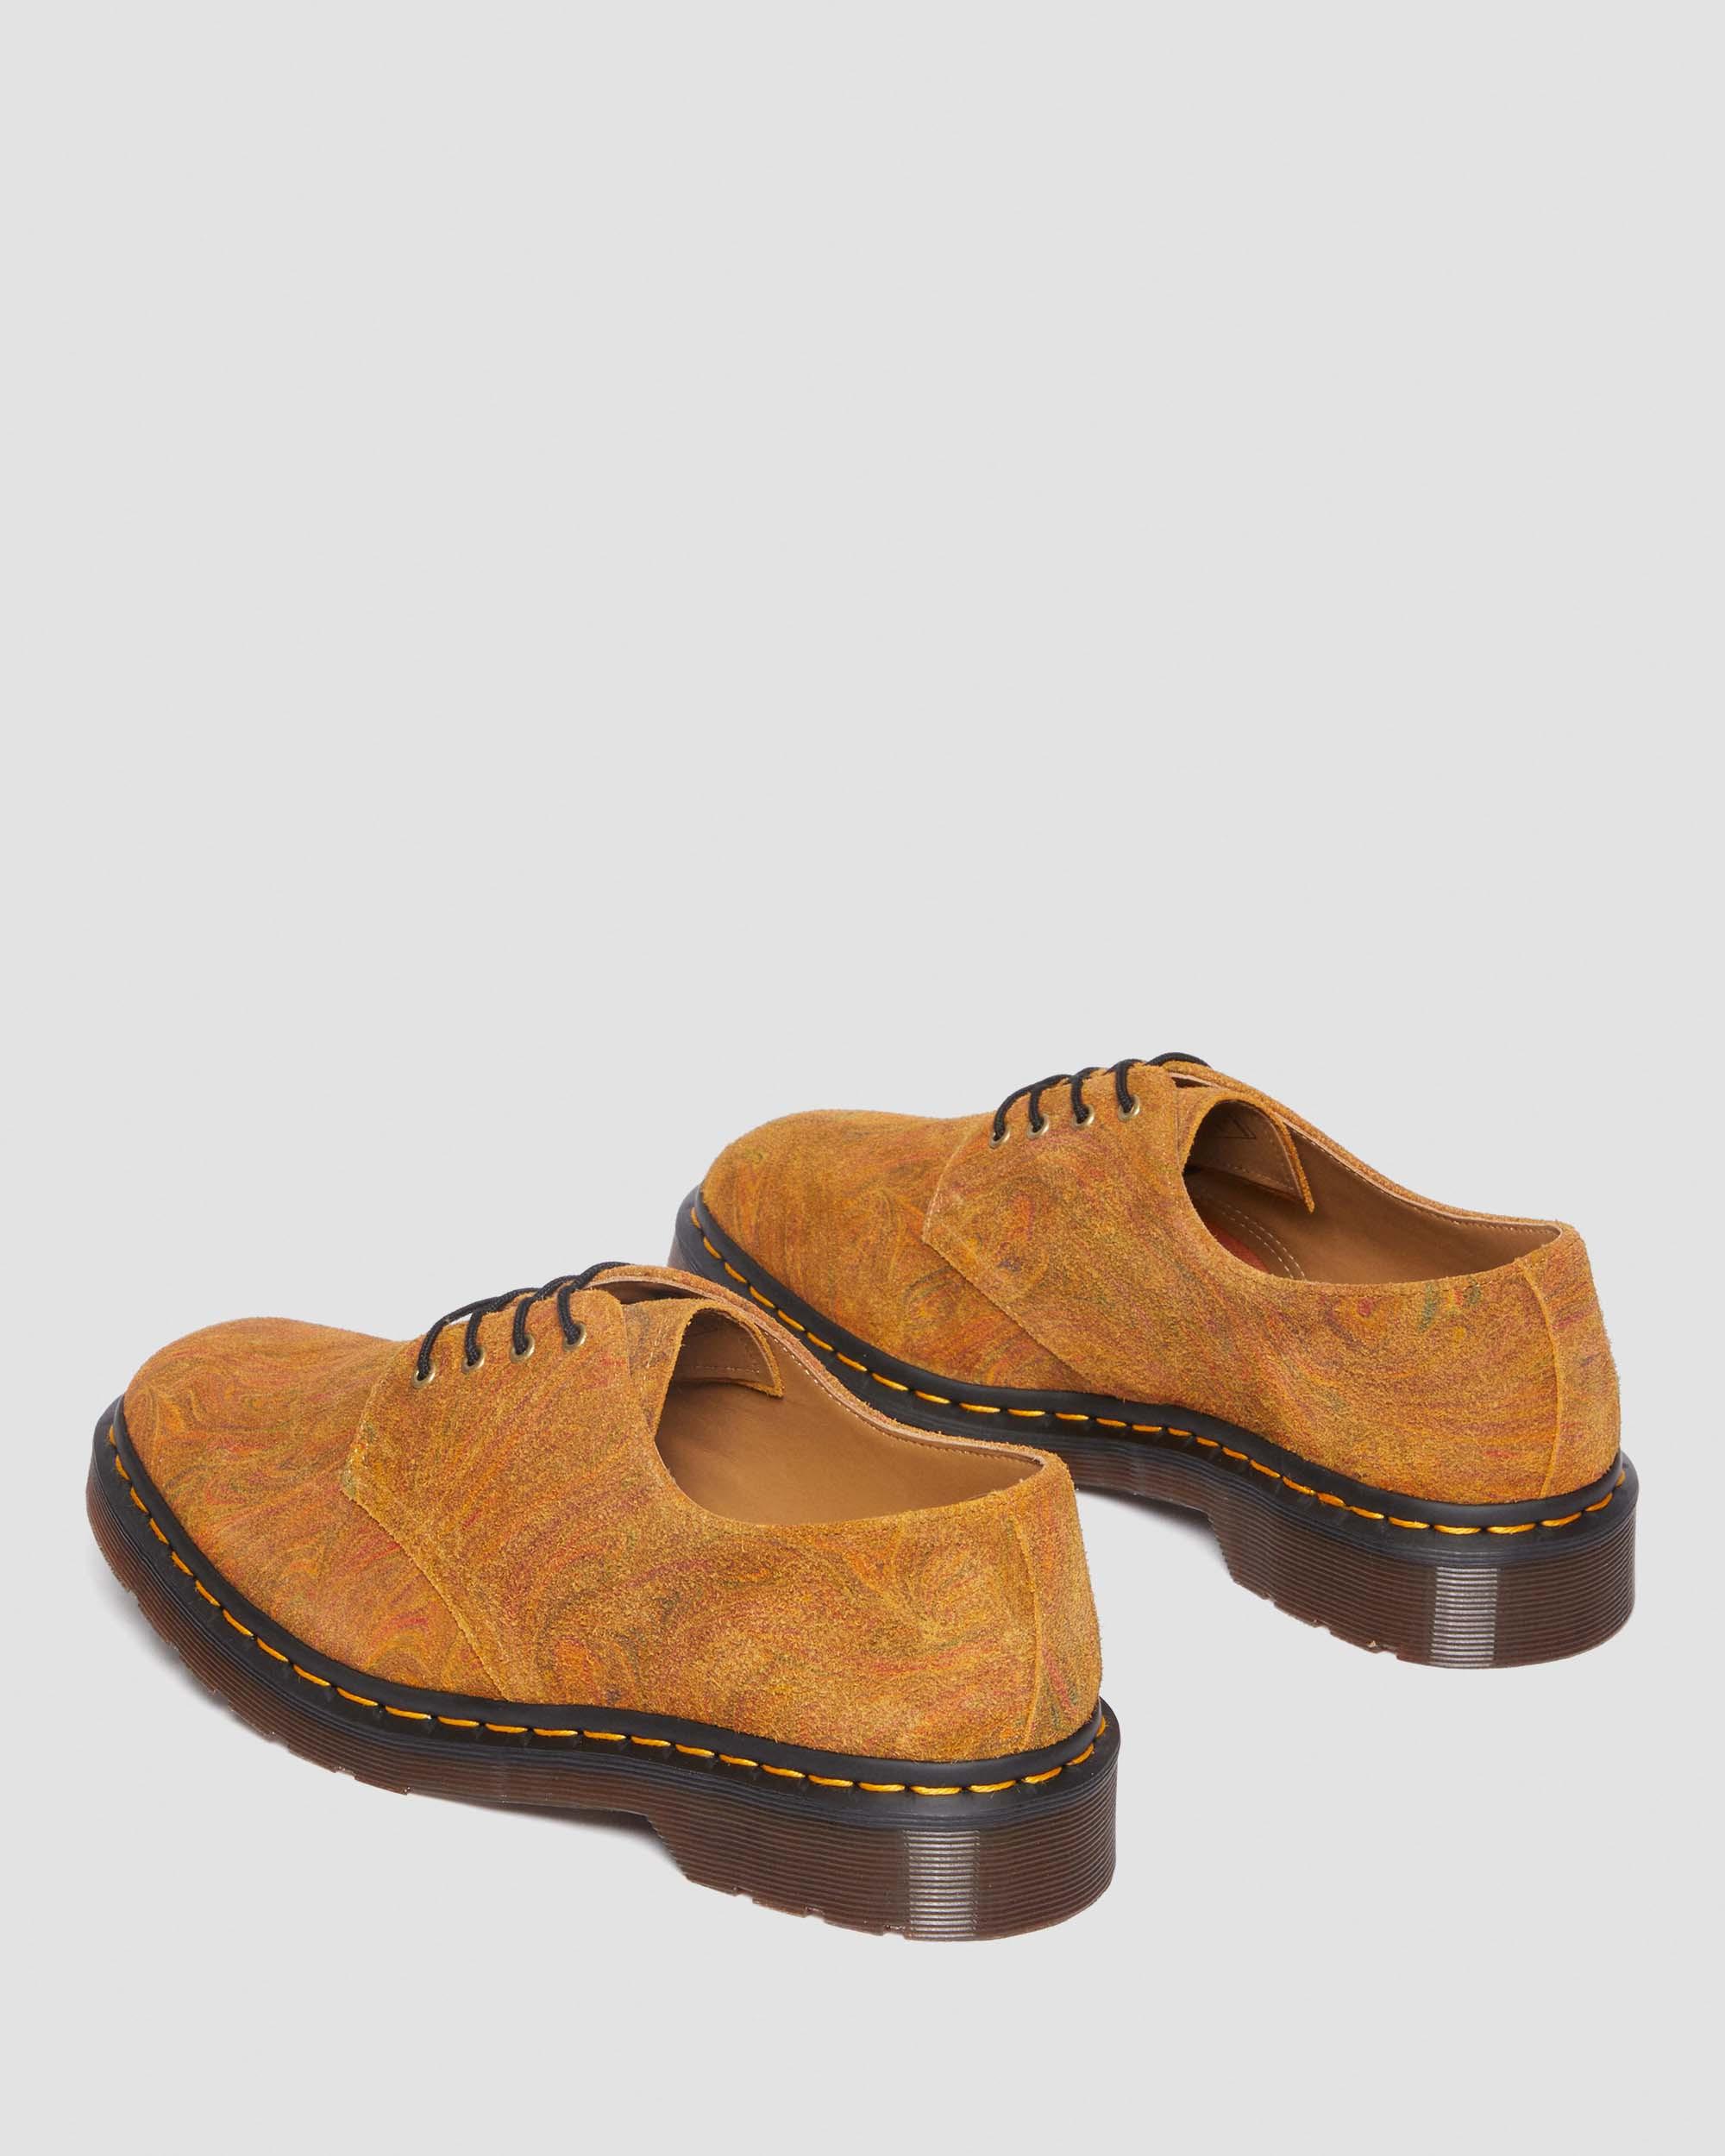 Smiths-sko i marmoreret ruskindSmiths-sko i marmoreret ruskind Dr. Martens